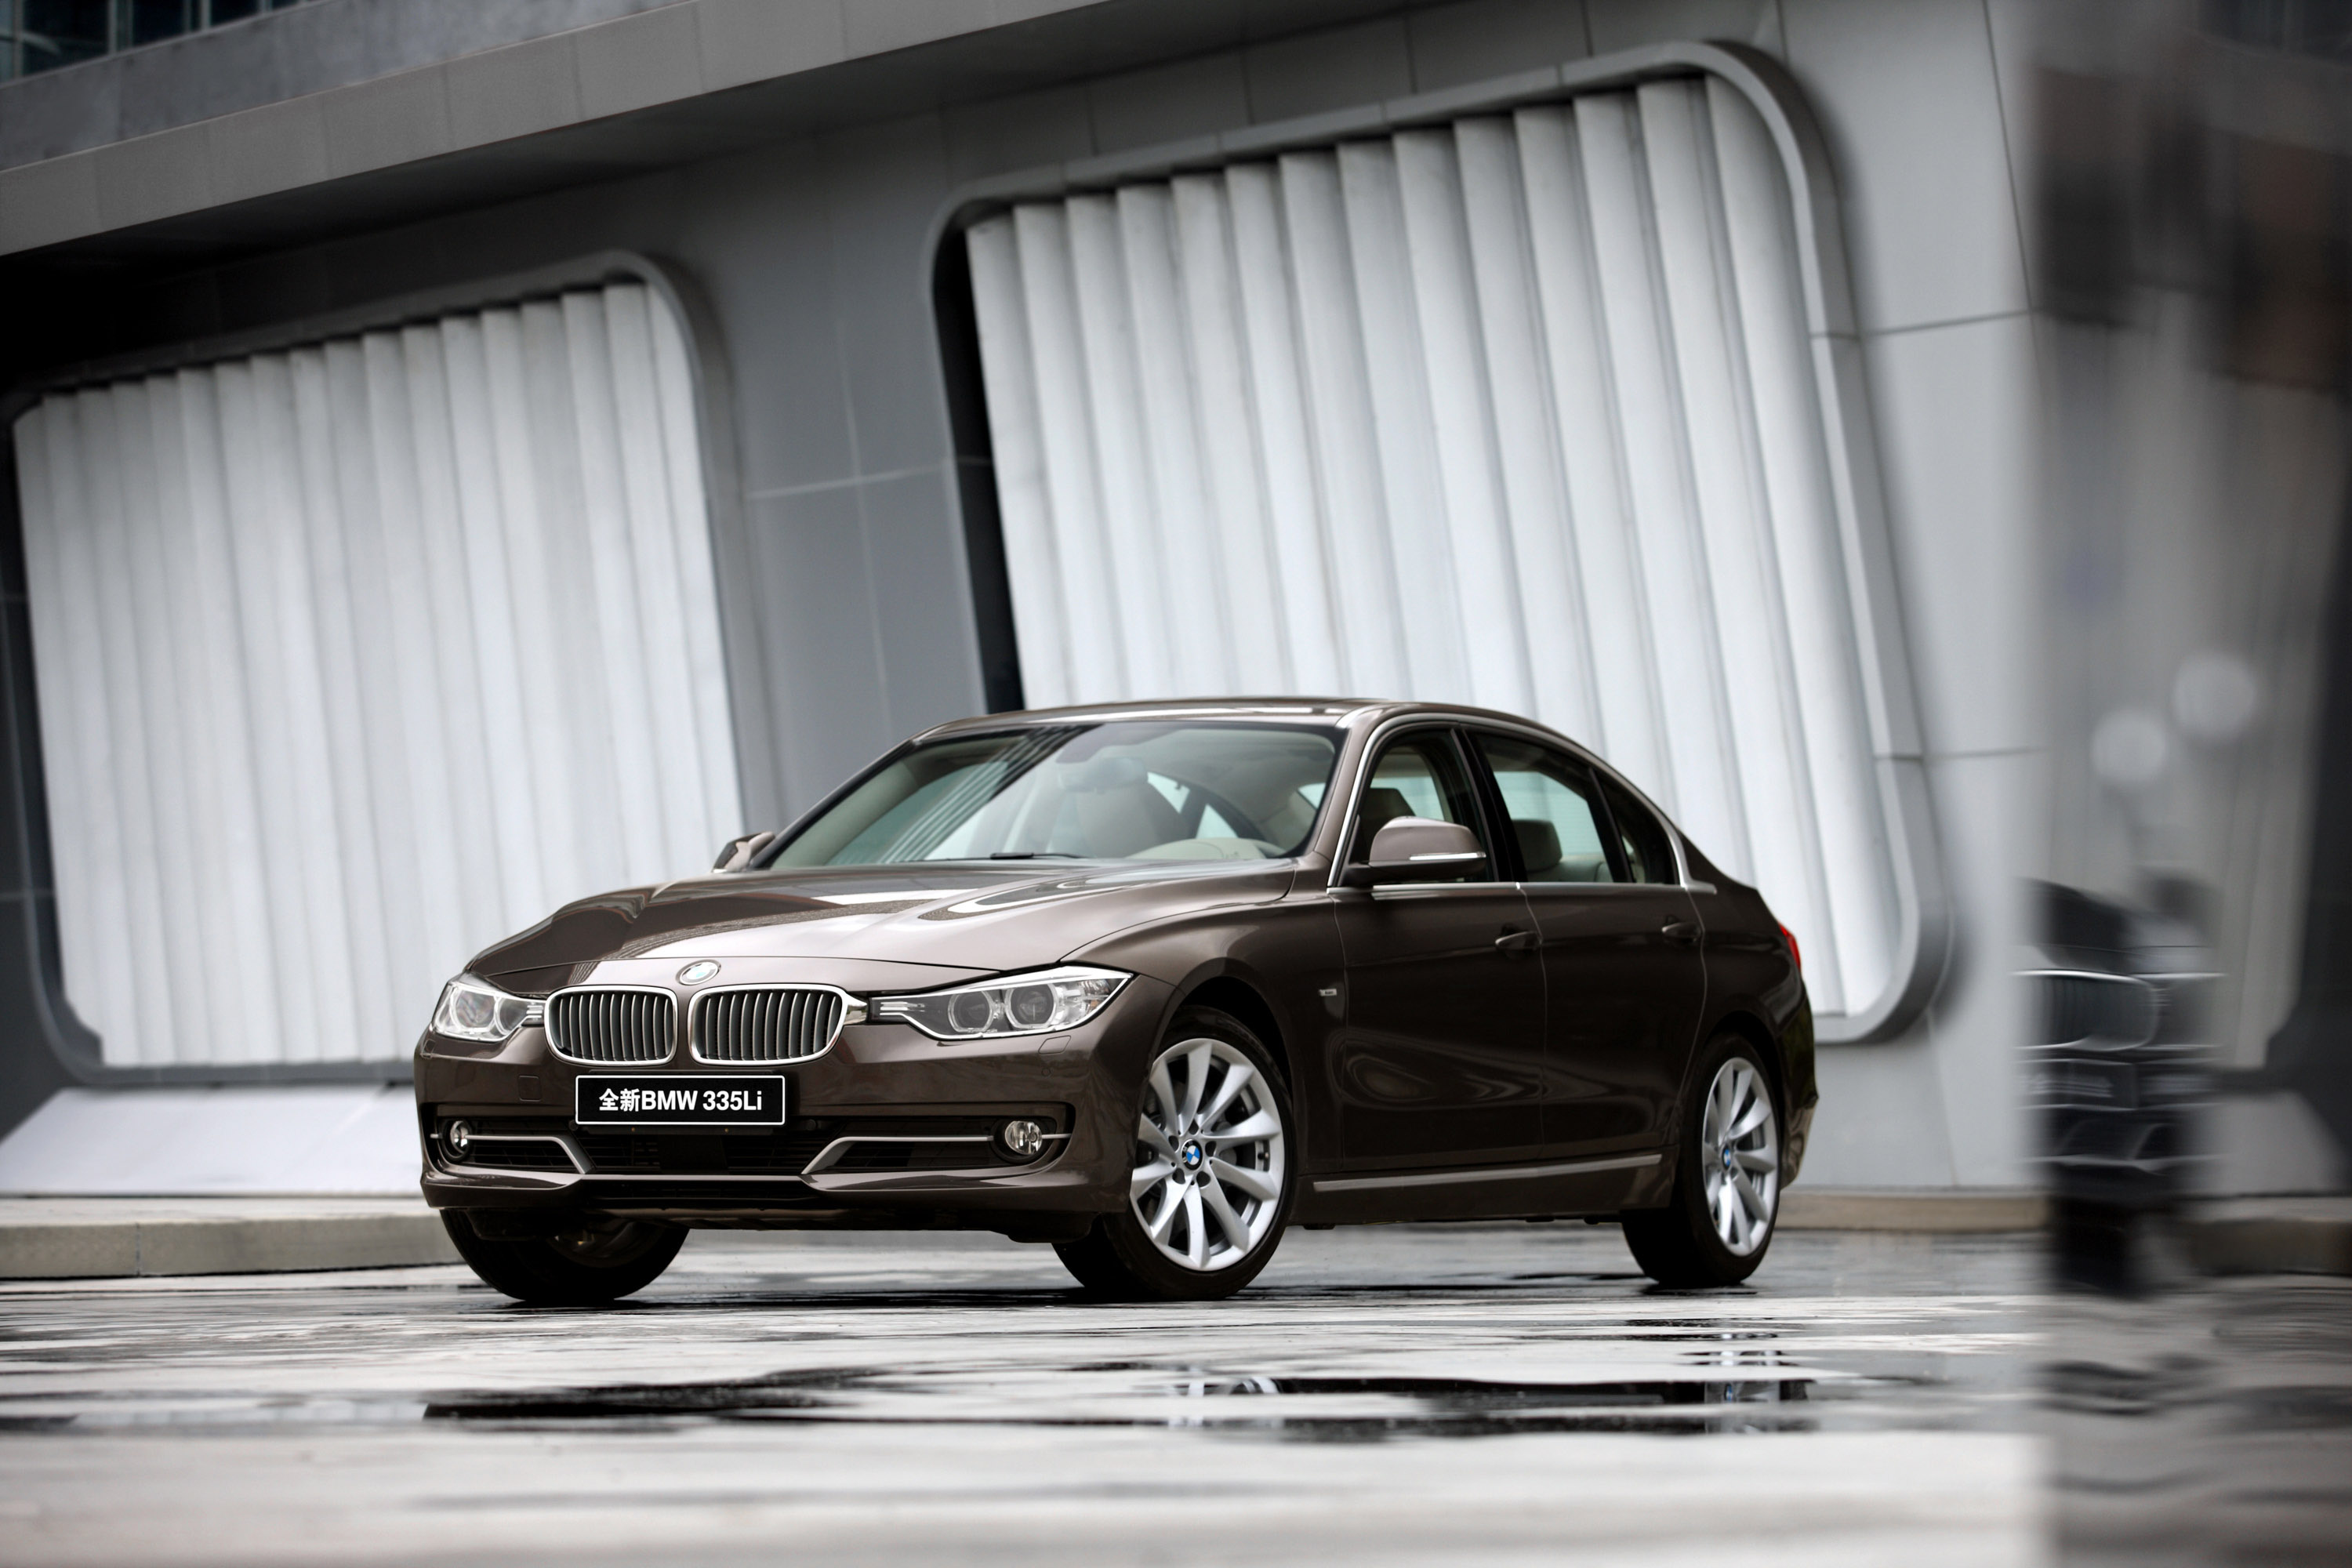 BMW 3 Series, Auto perfection, 2013 model, Sublime beauty, 3000x2000 HD Desktop